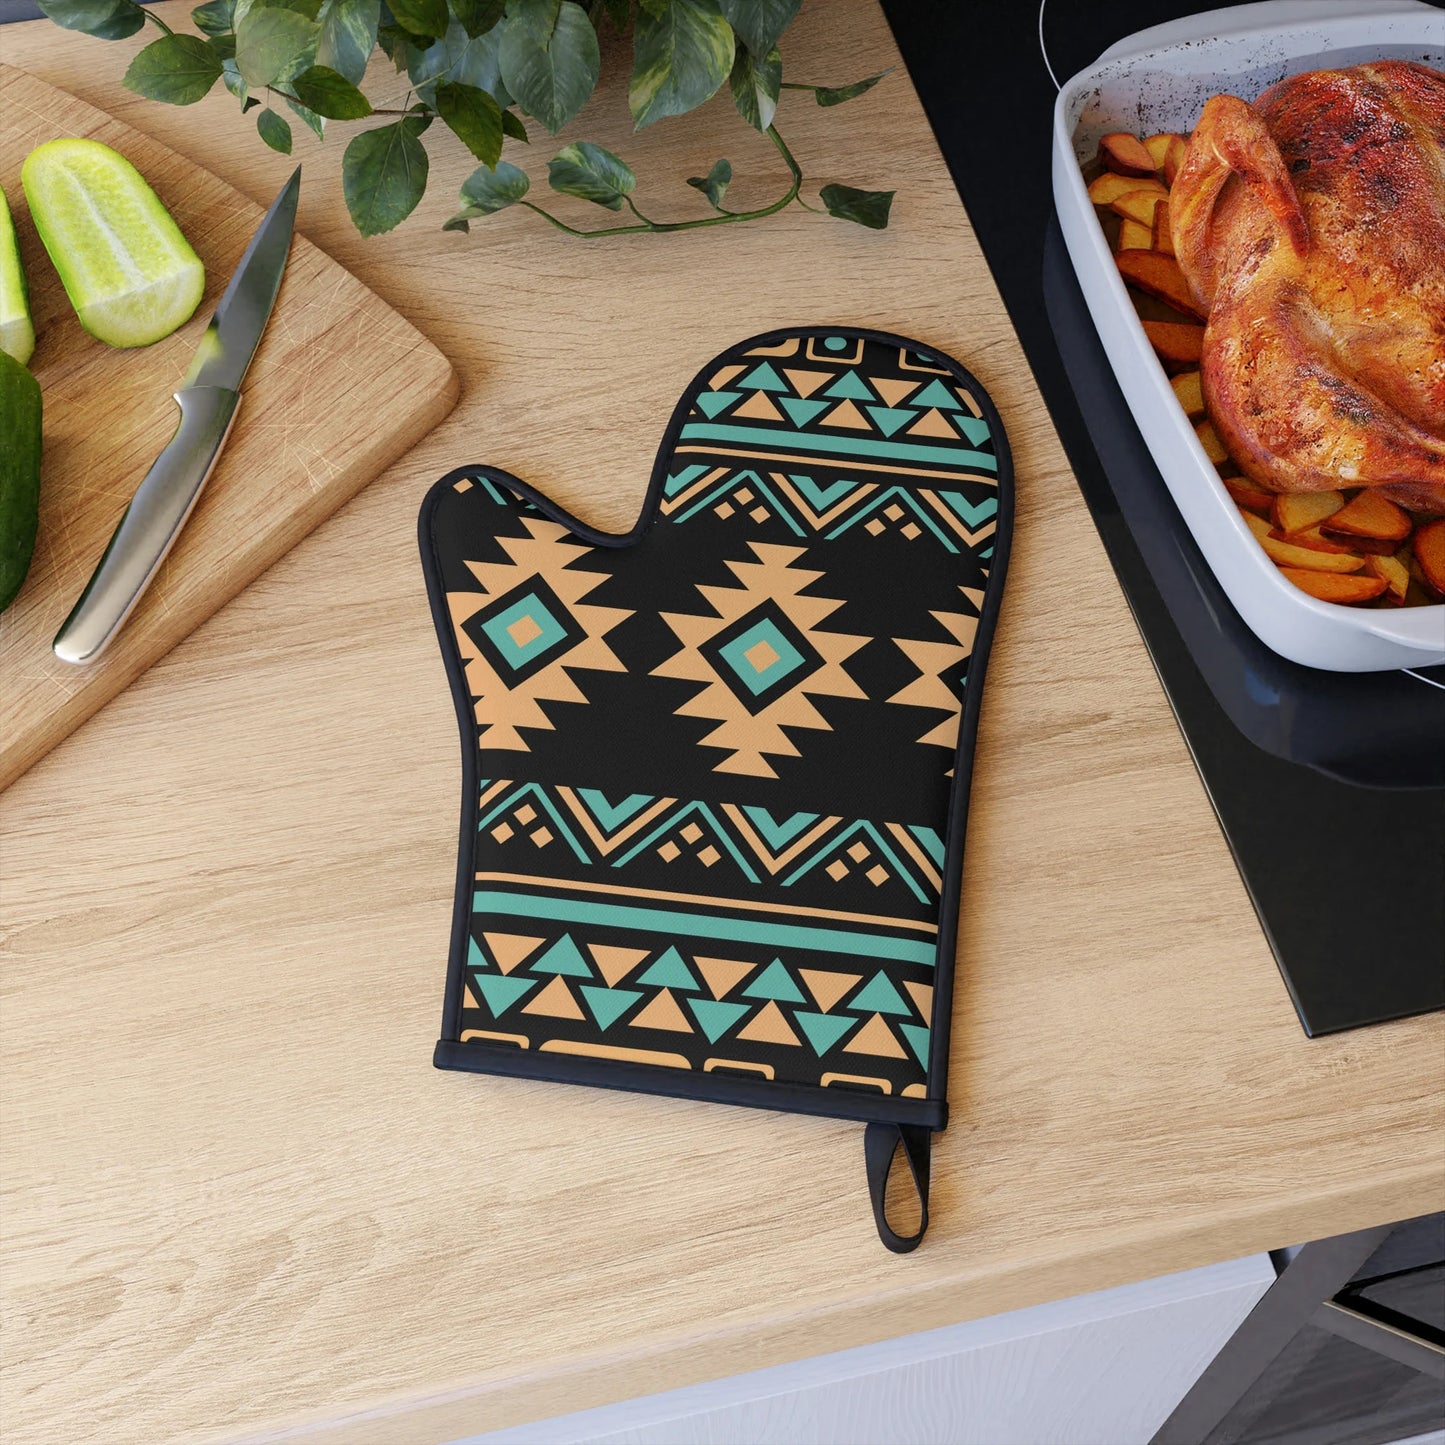 Aztec Inspired Oven Glove